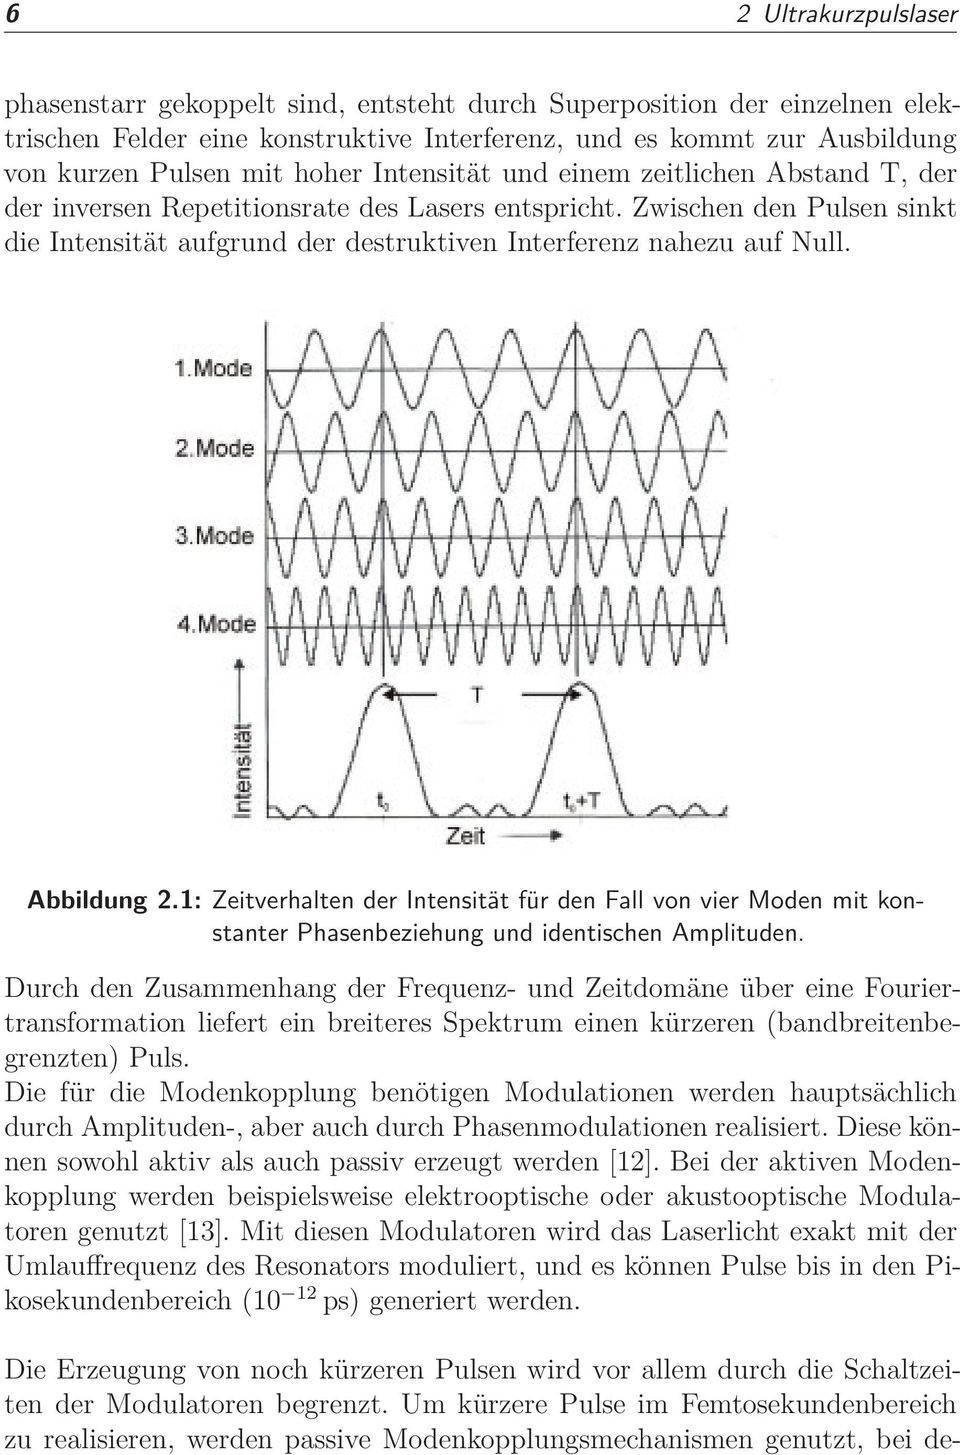 Abbildung 2.1: Zeitverhalten der Intensität für den Fall von vier Moden mit konstanter Phasenbeziehung und identischen Amplituden.